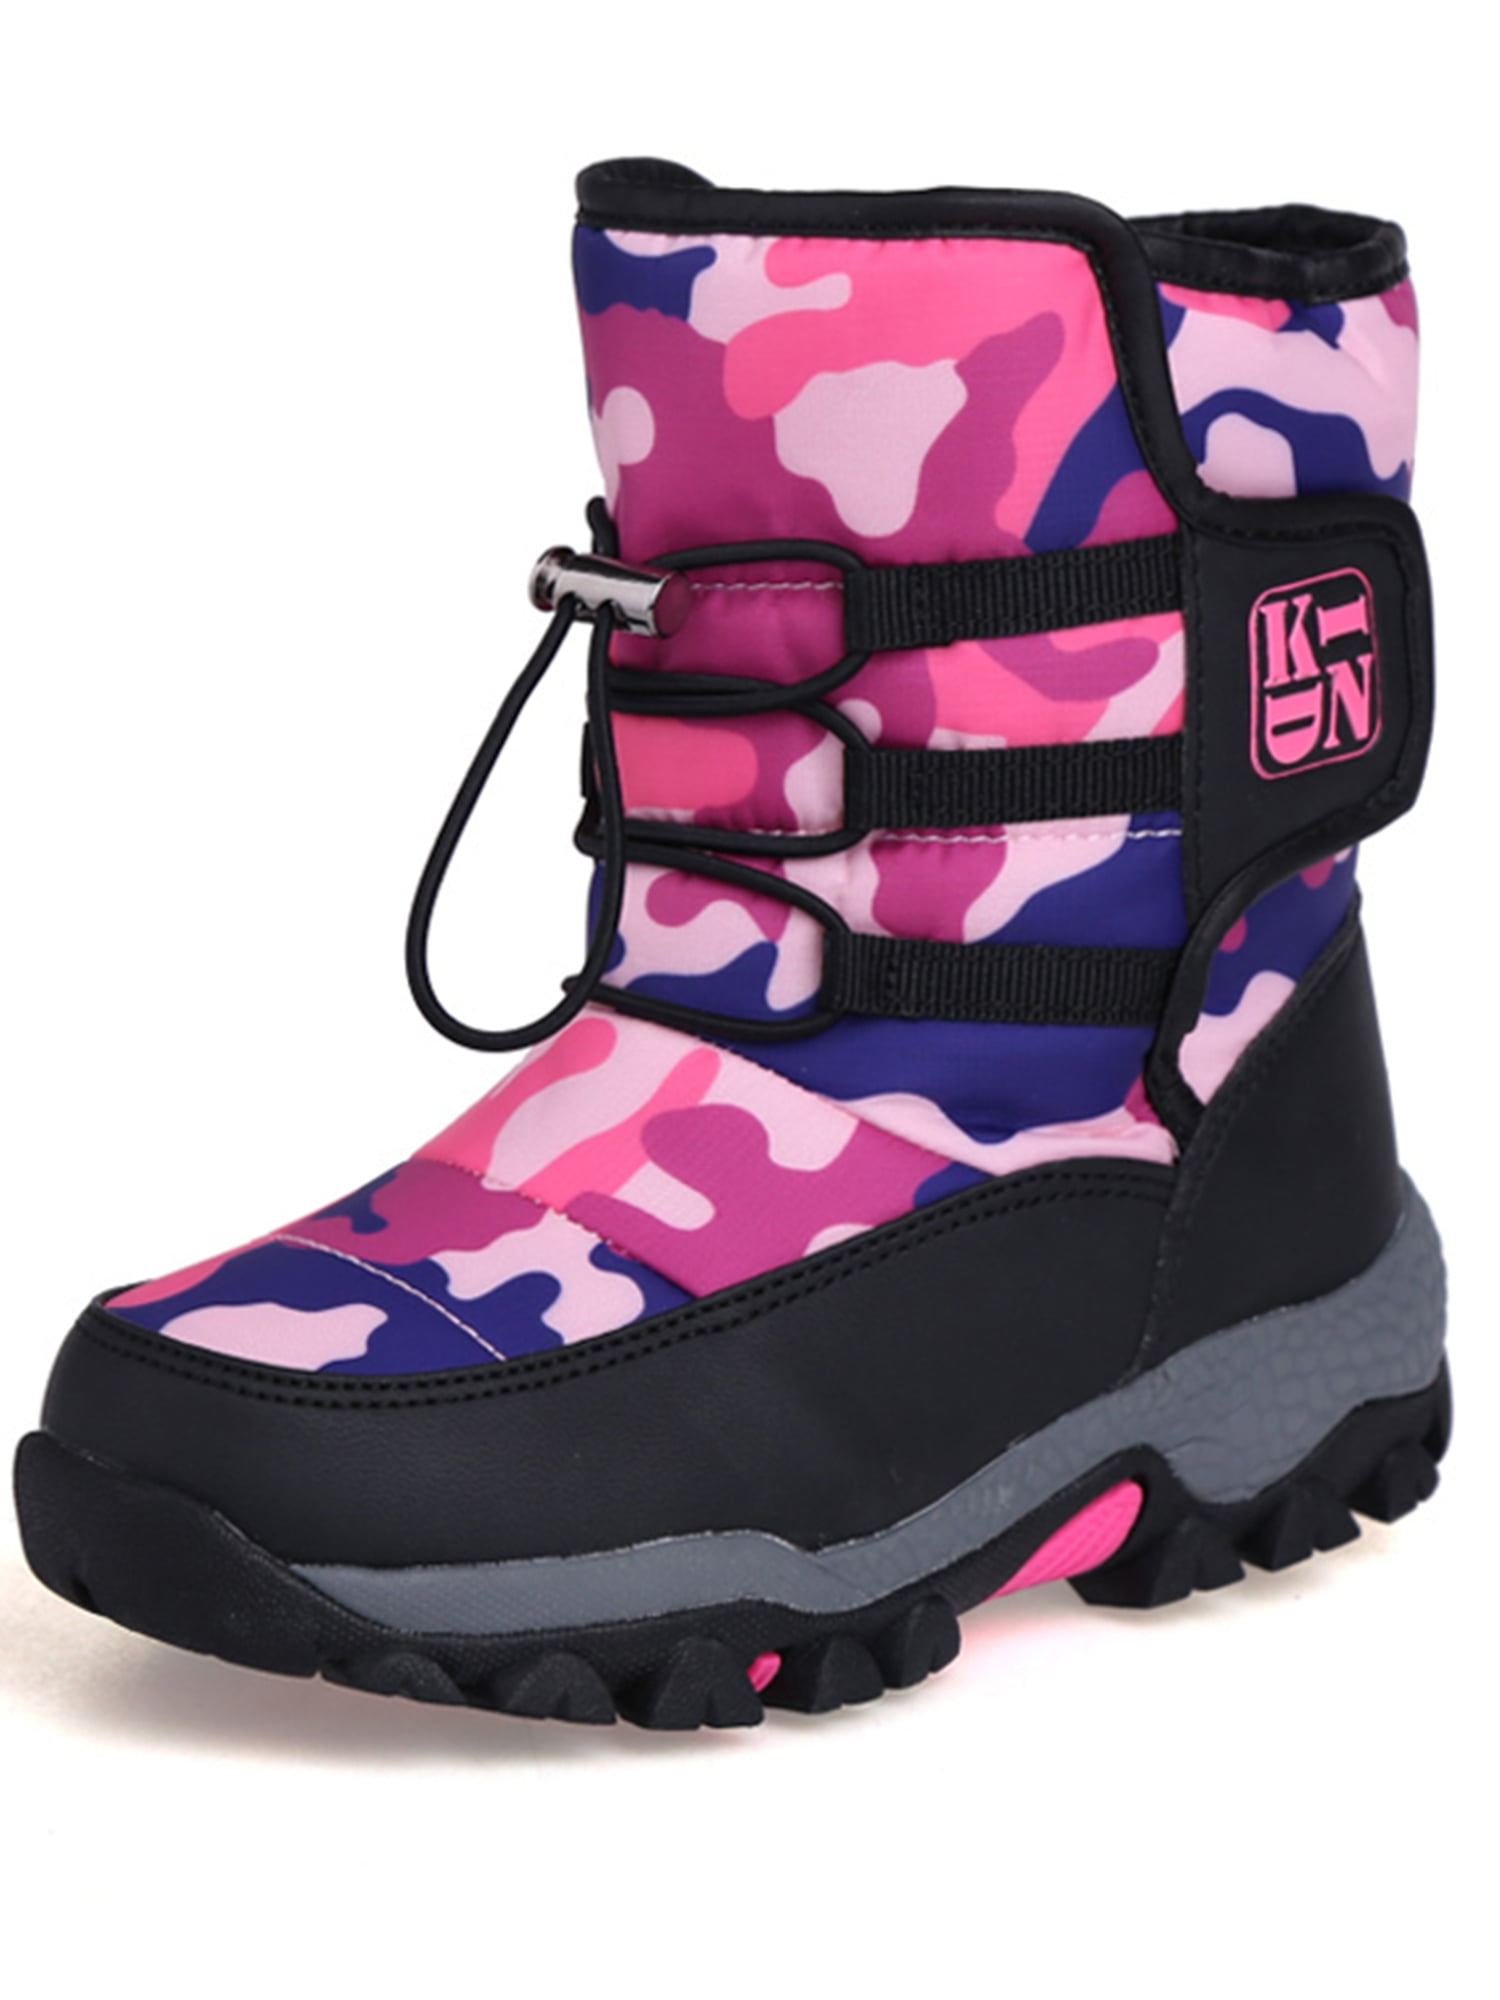 Winter Fleece Snow Boots For Boys Girls Children Kids Waterproof Outdoor Shoes 